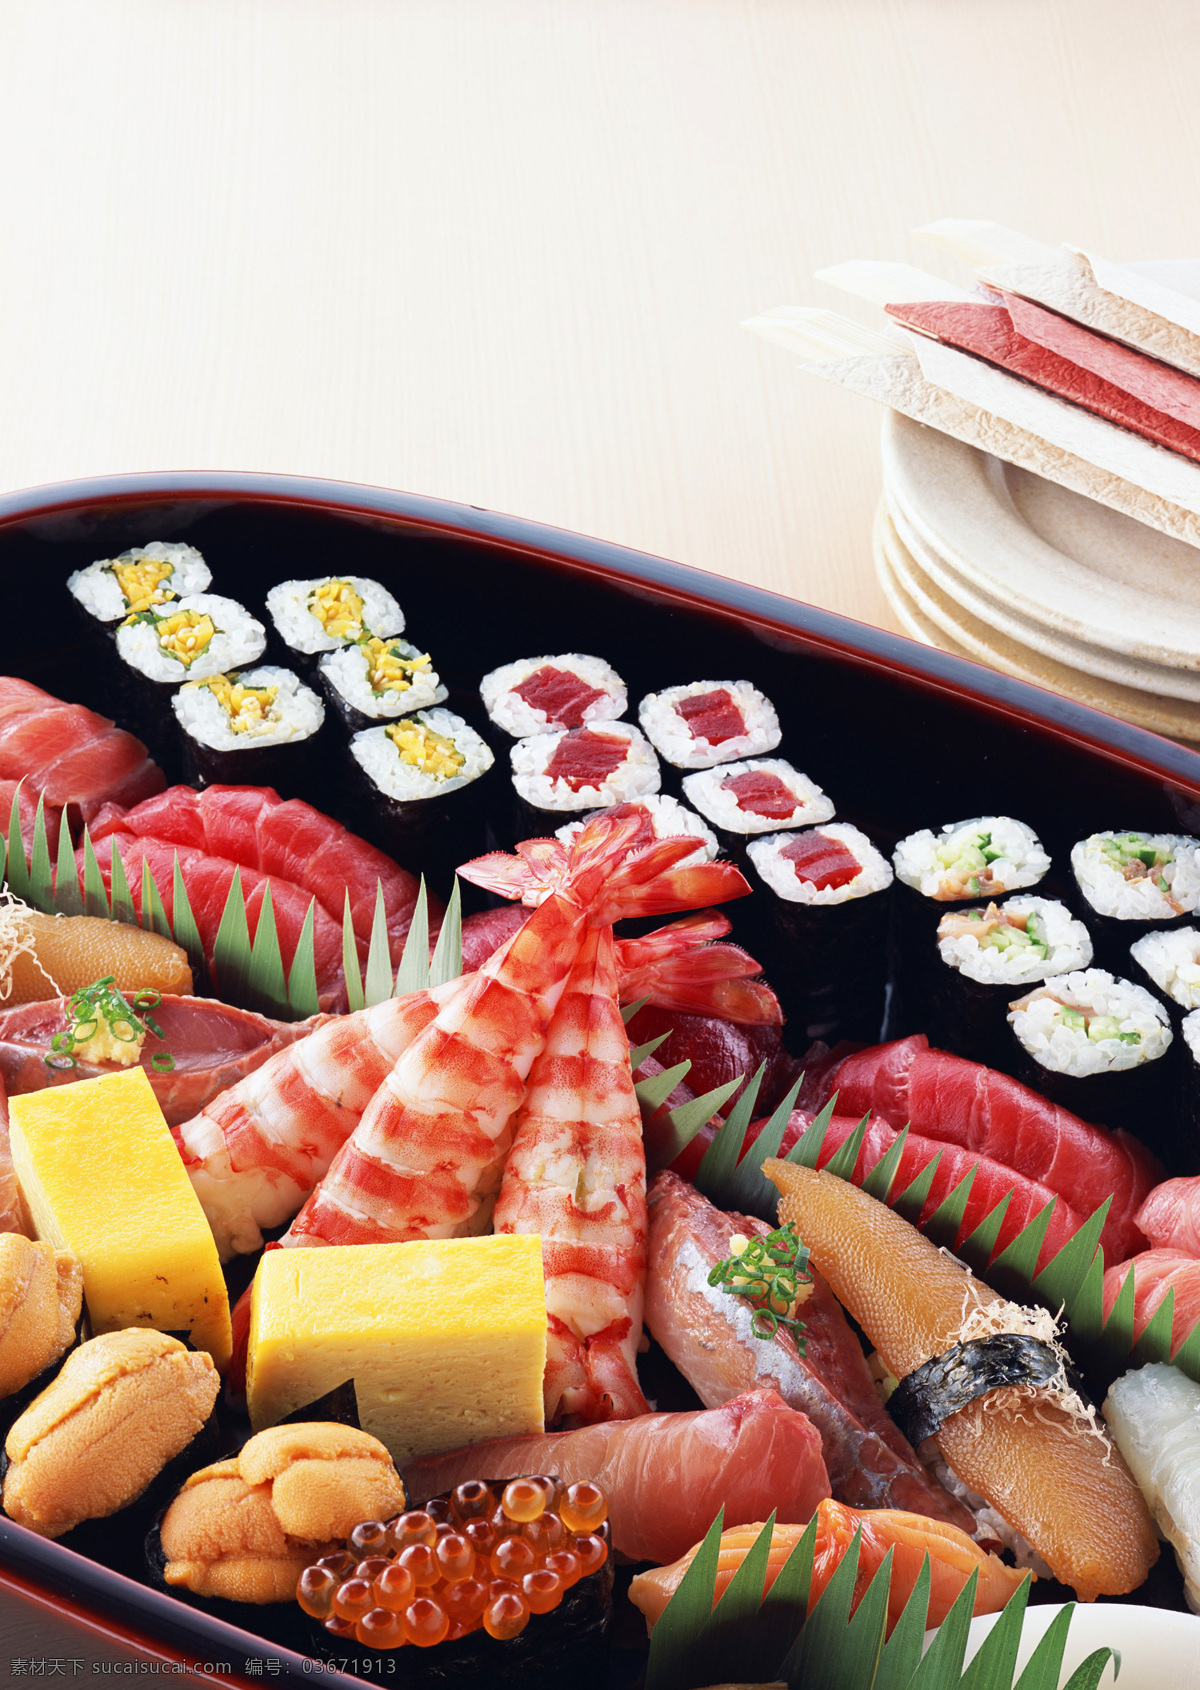 日本料理 寿司 日本菜 自助餐 海鲜 生鱼片 餐饮美食